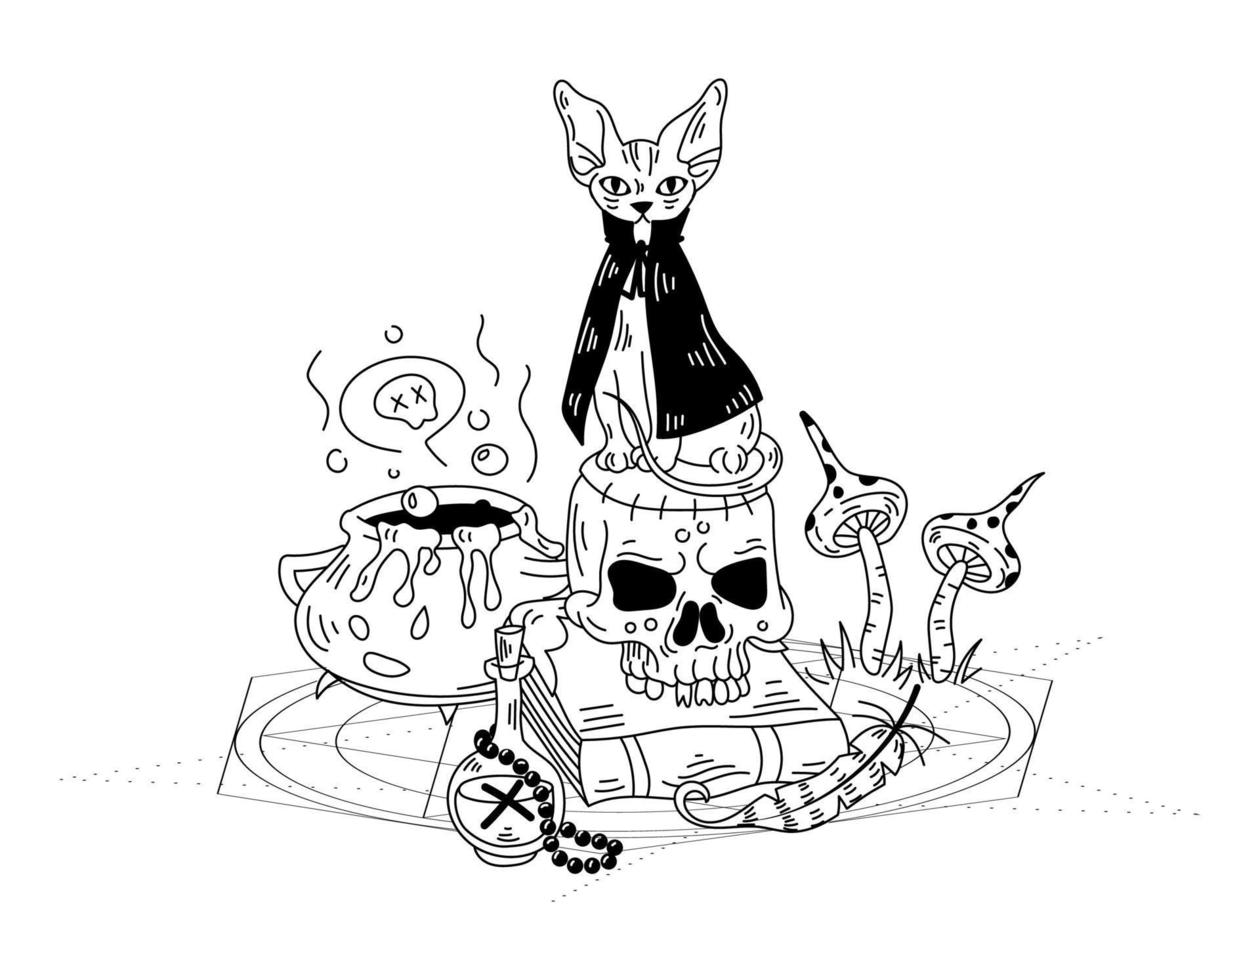 composizione mistica con il gatto di una strega e un teschio. illustrazione di doodle disegnato a mano di vettore